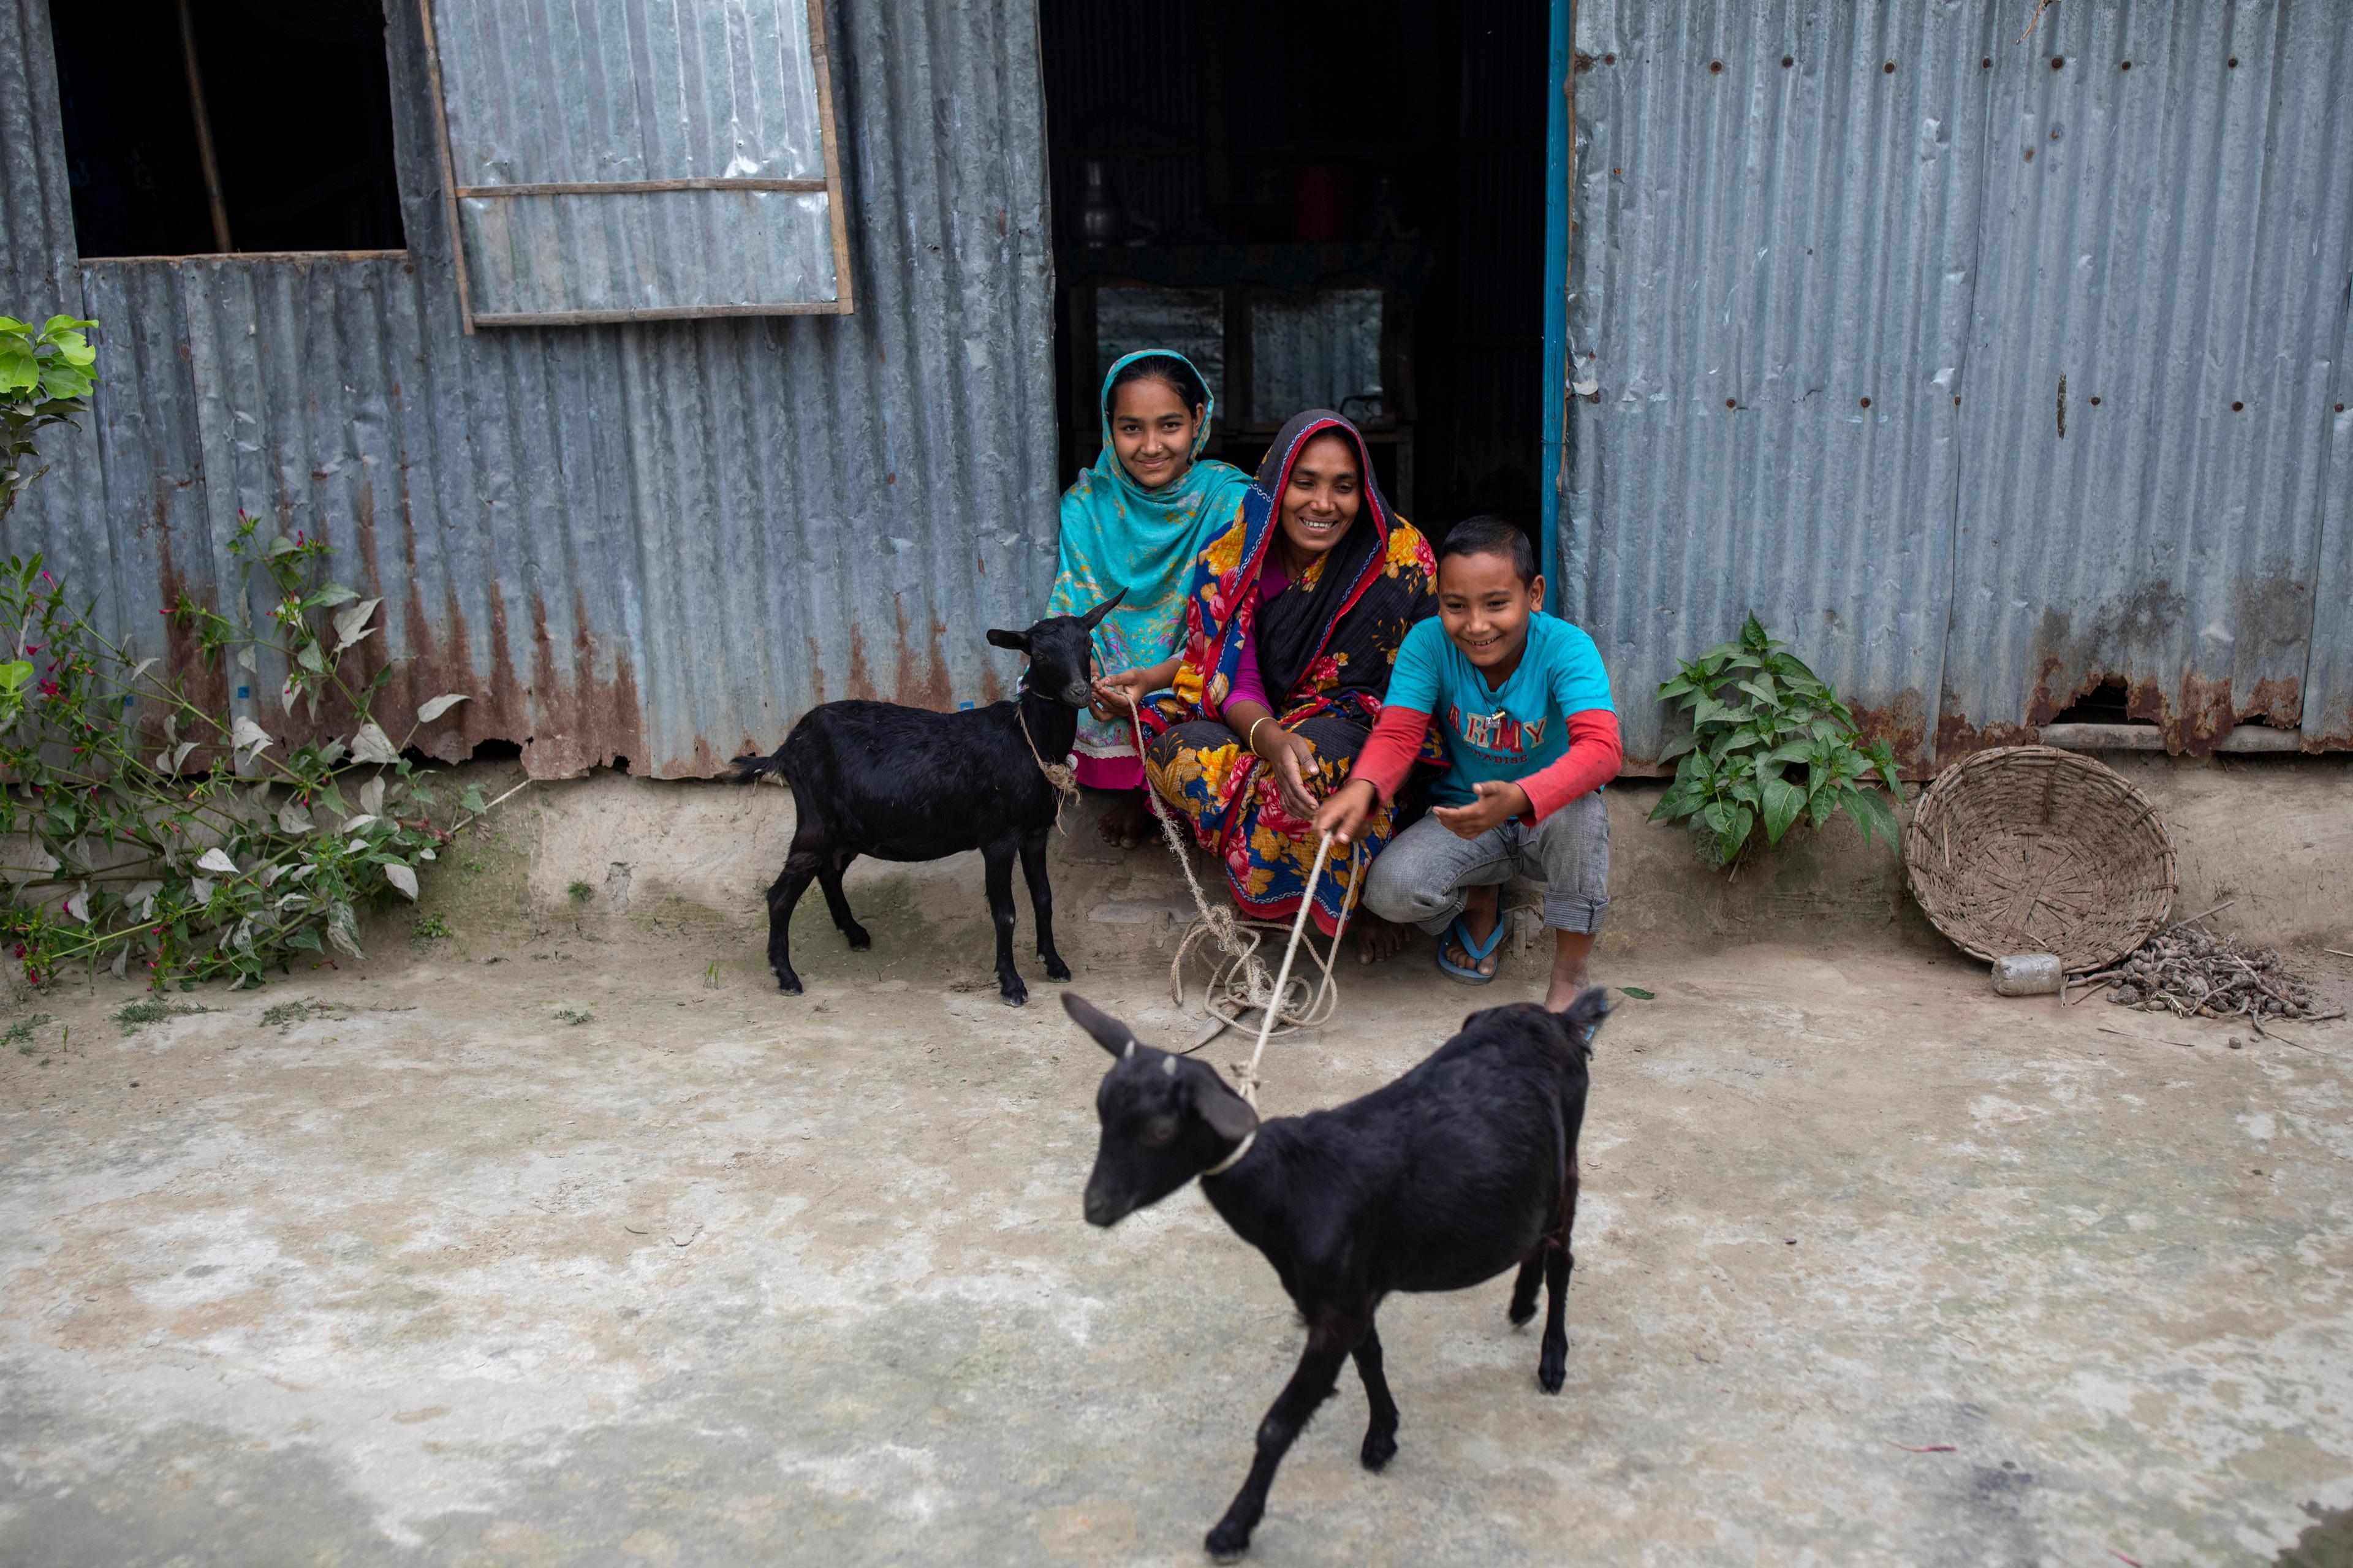 Una donna e due bambini sono seduti davanti a una casa di ferro ondulato e ridono allegramente. Accanto a loro ci sono due capre. 